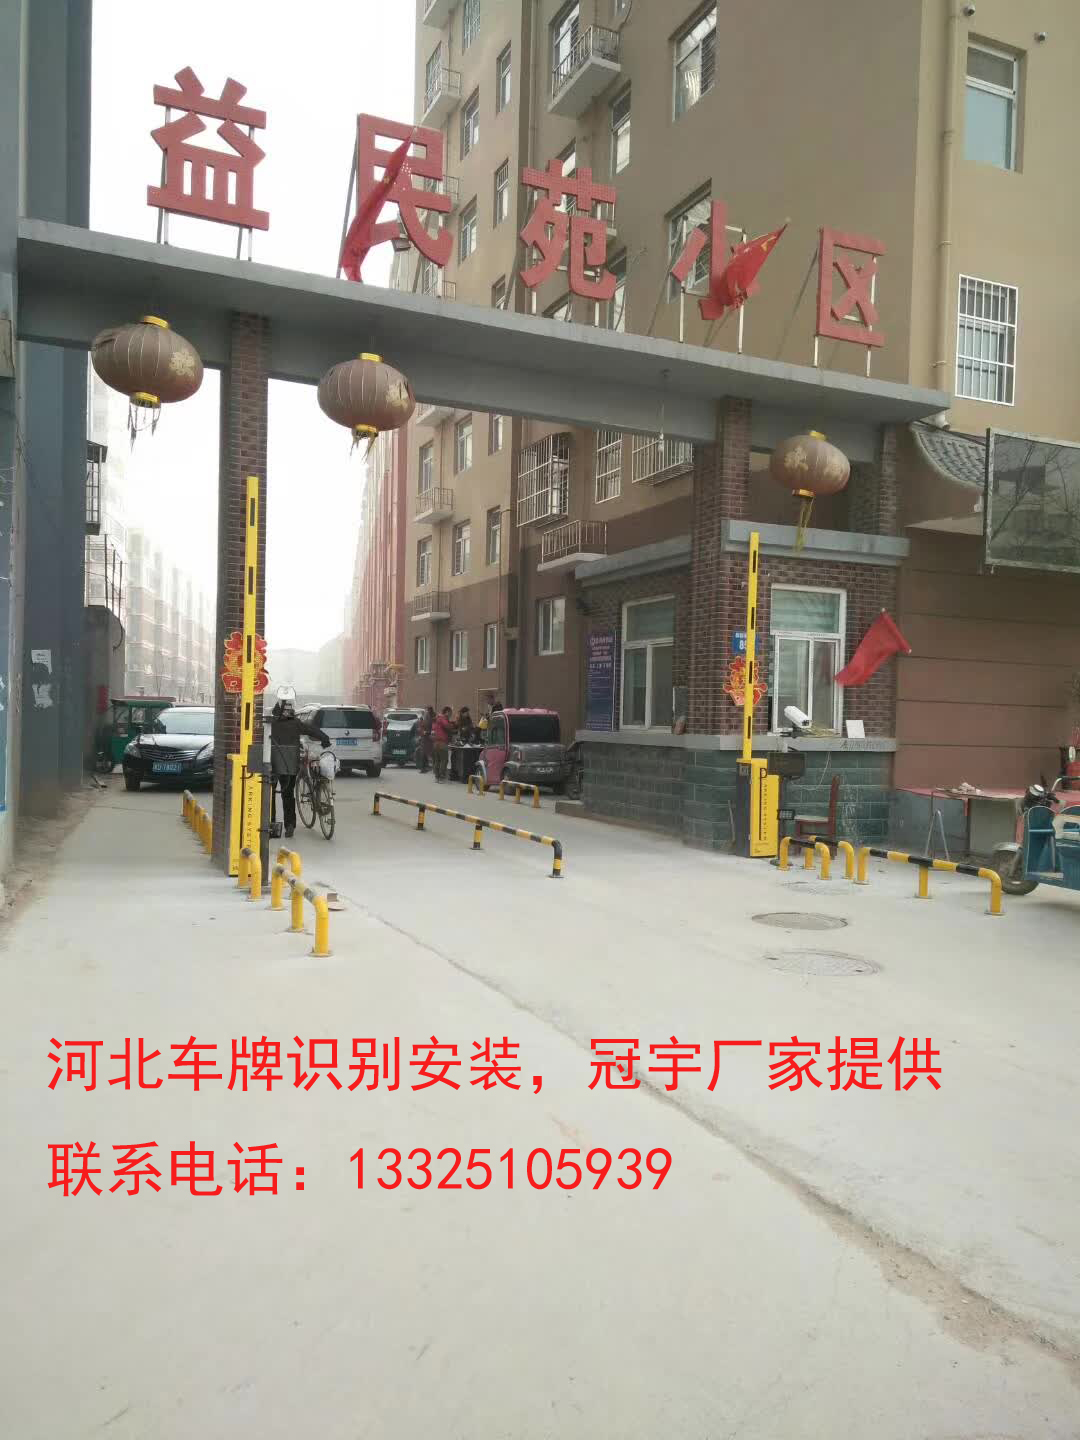 平阴邯郸哪有卖道闸车牌识别？